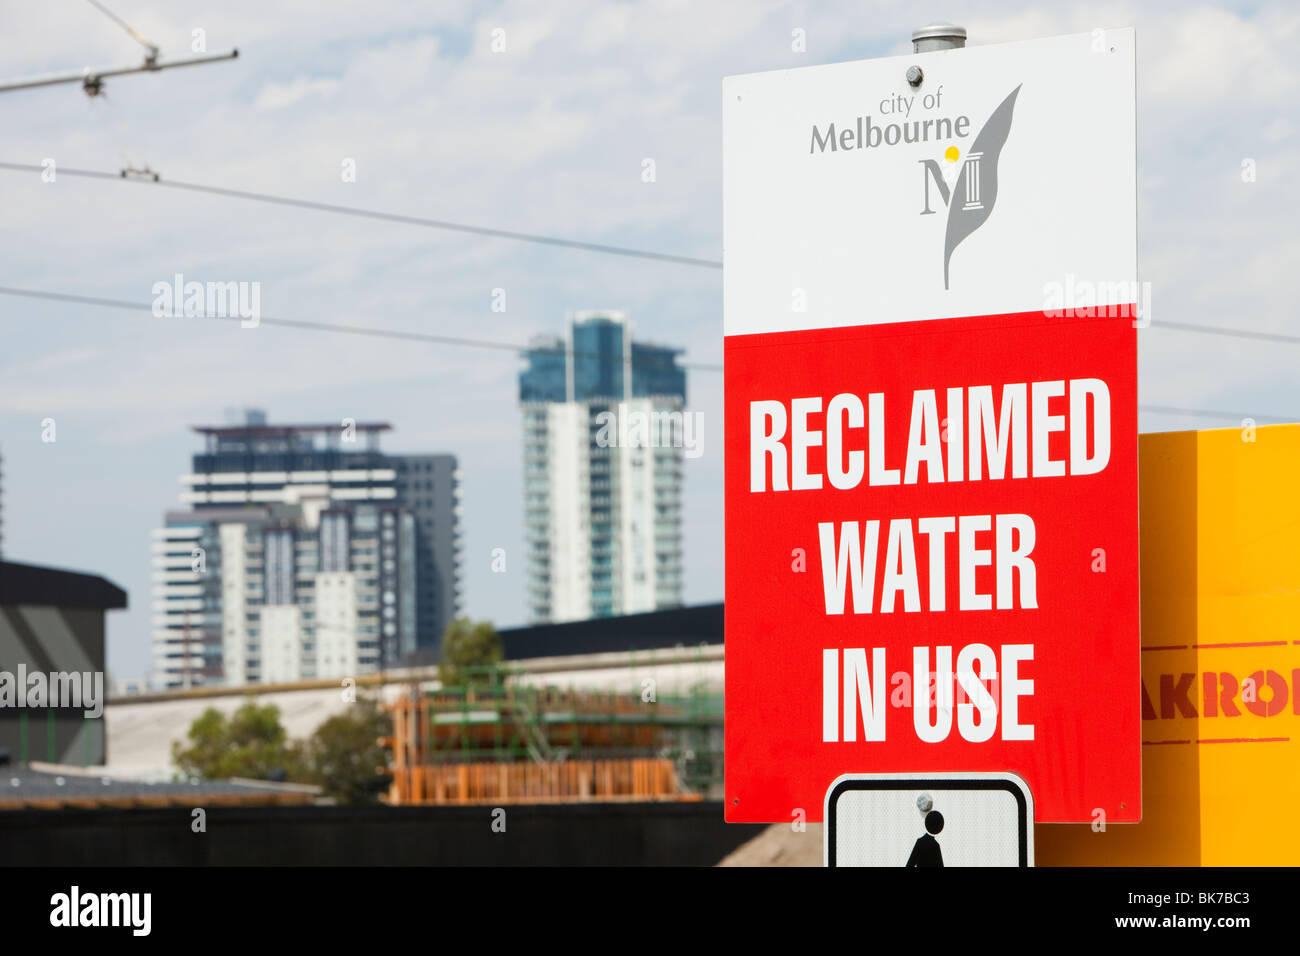 Segni di Melbourne circa rigenerate utilizzo dell'acqua, a causa della siccità in corso. Foto Stock